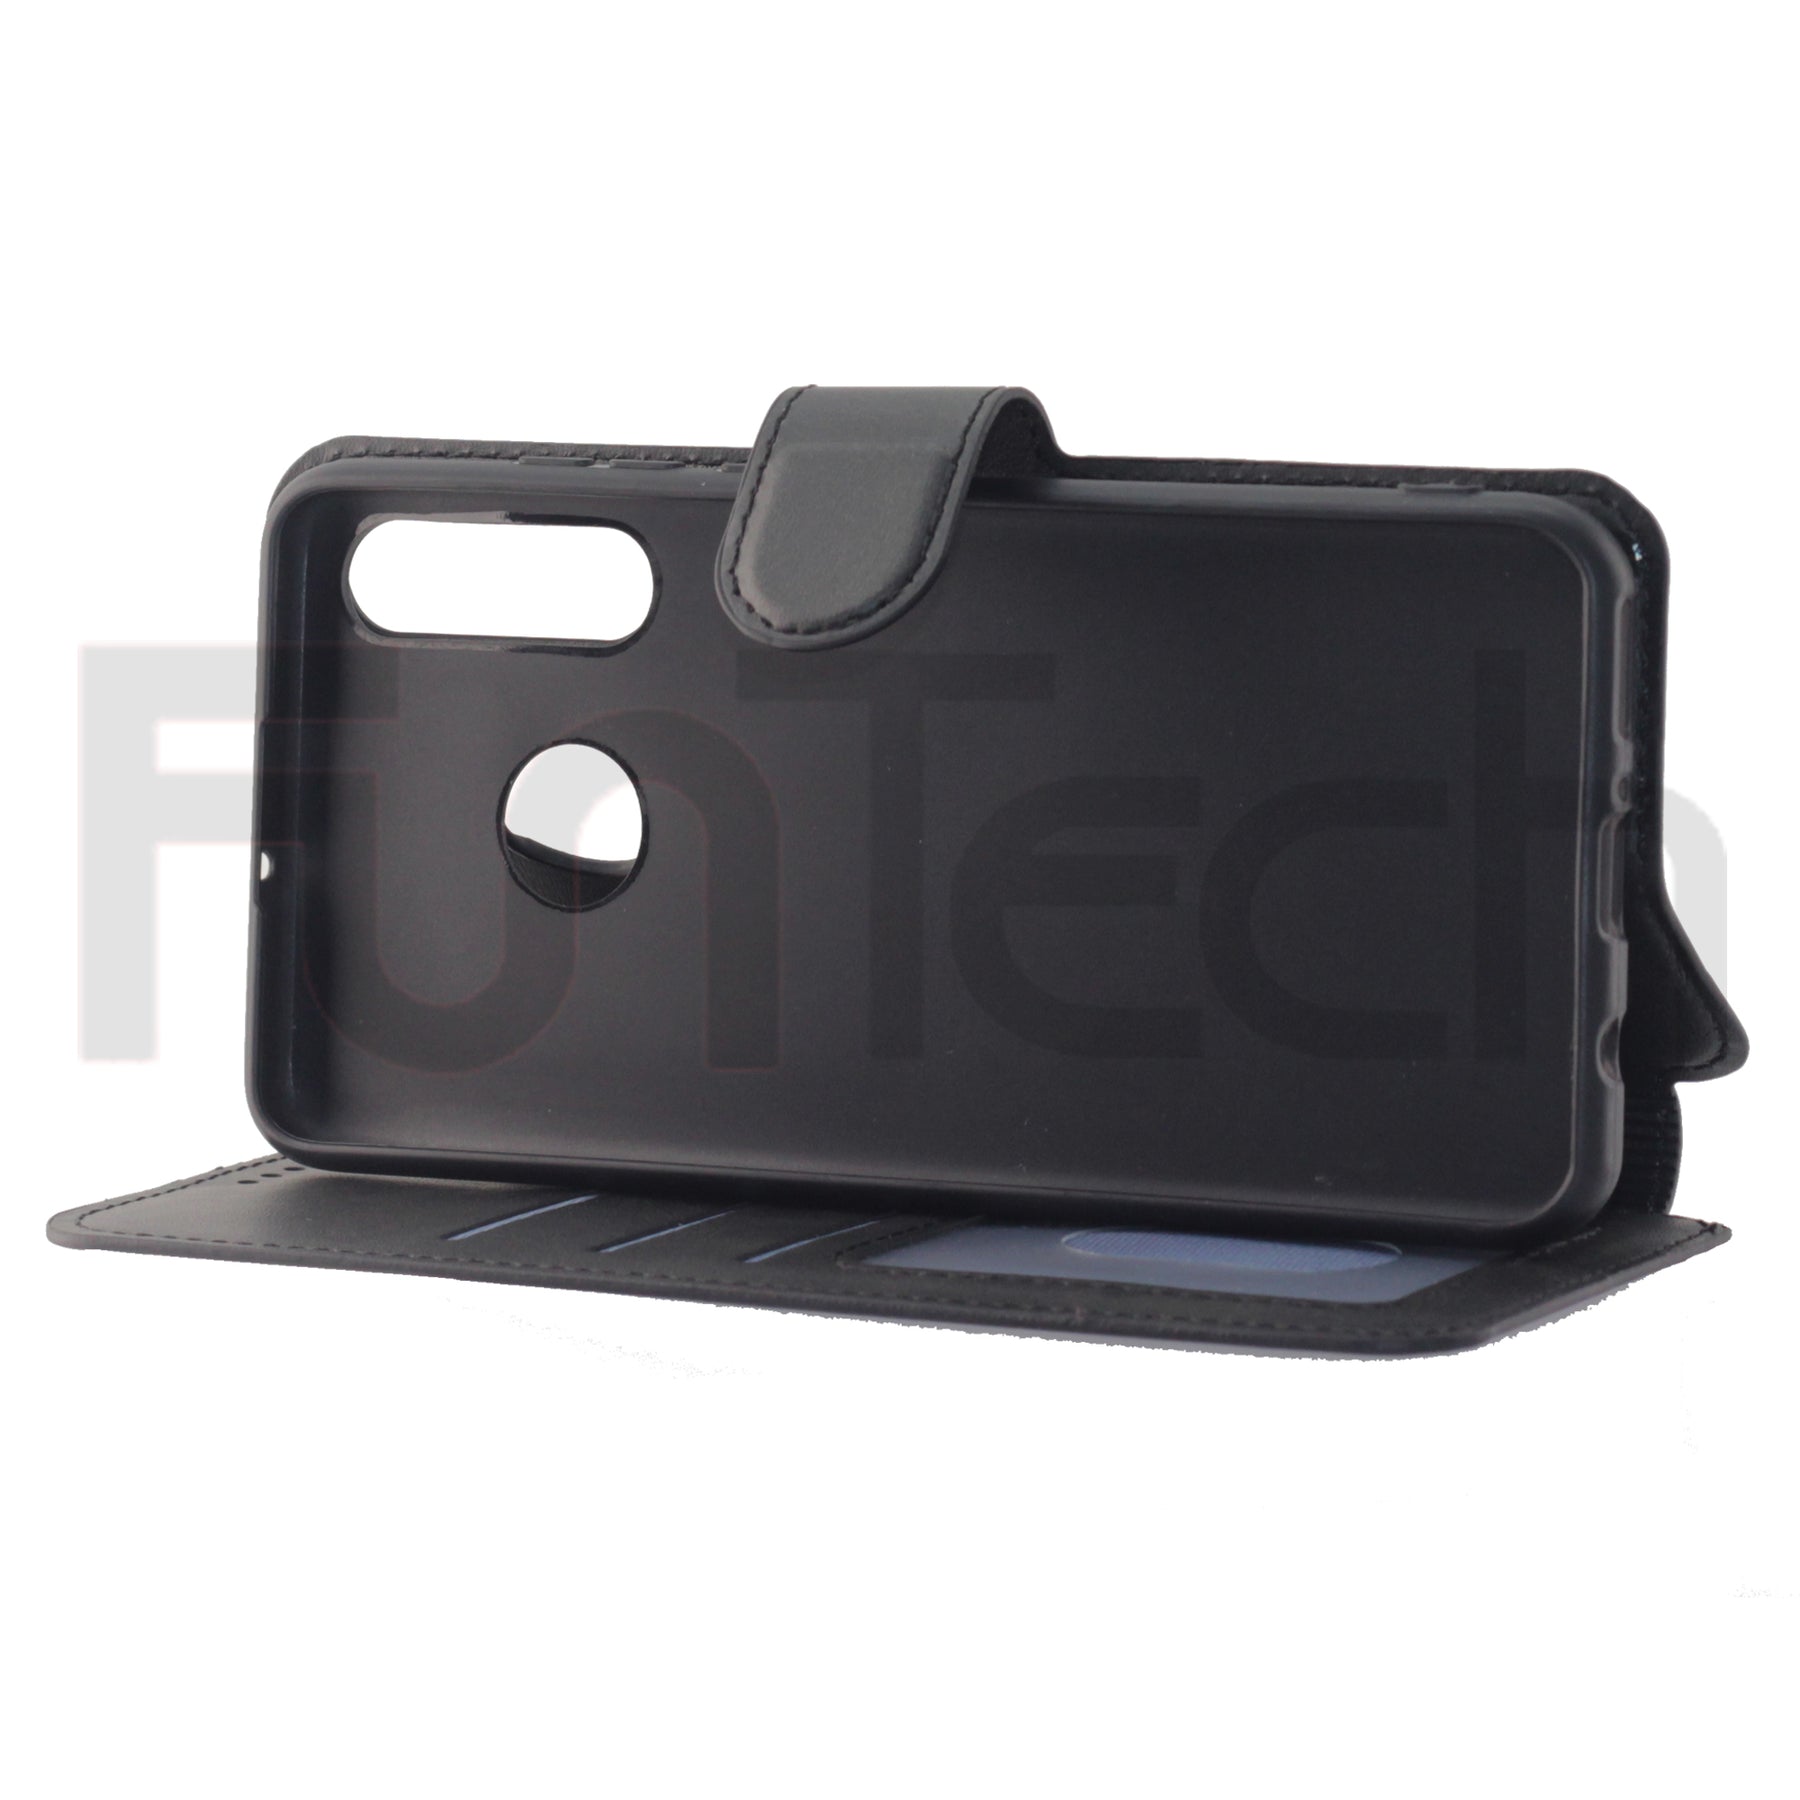 Huawei P30 Lite, Case, Color Black.